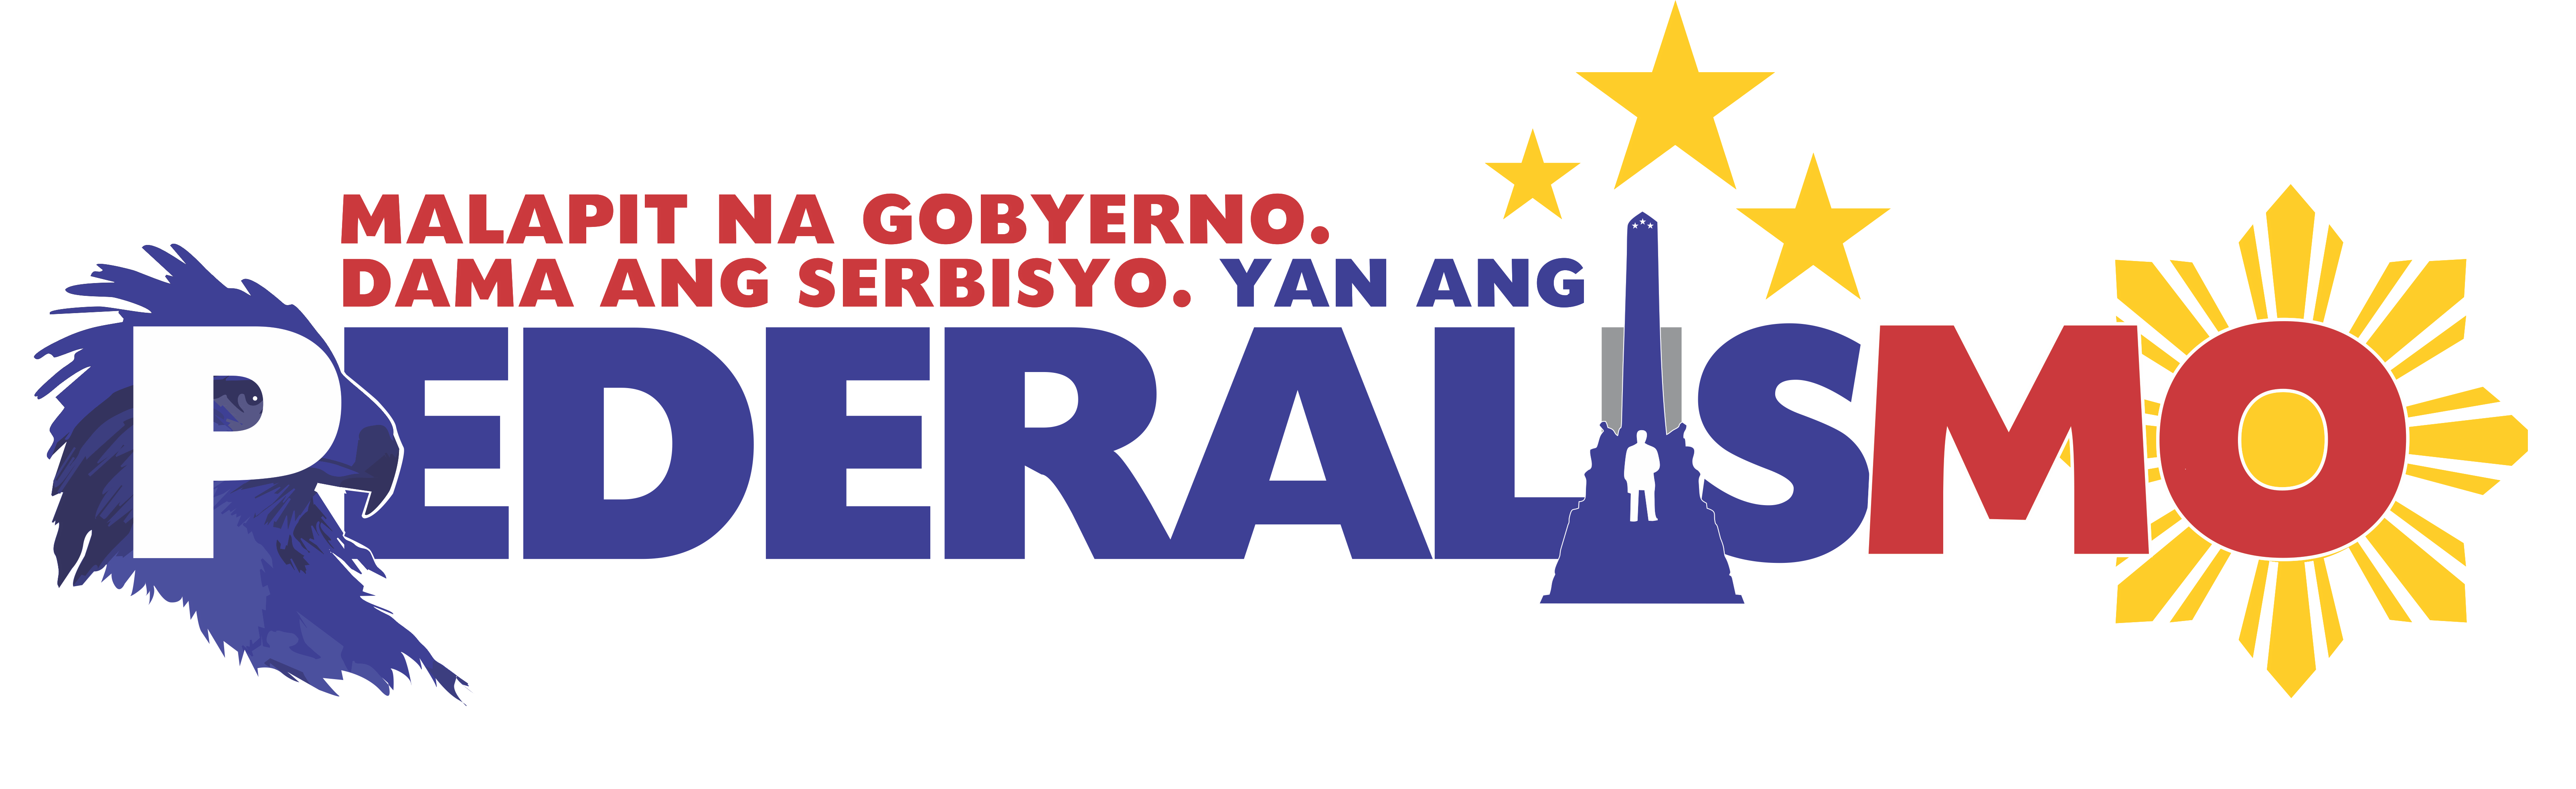 Federalism Logo - REGIONAL CONVENTION FOR FEDERALISM IN CAR